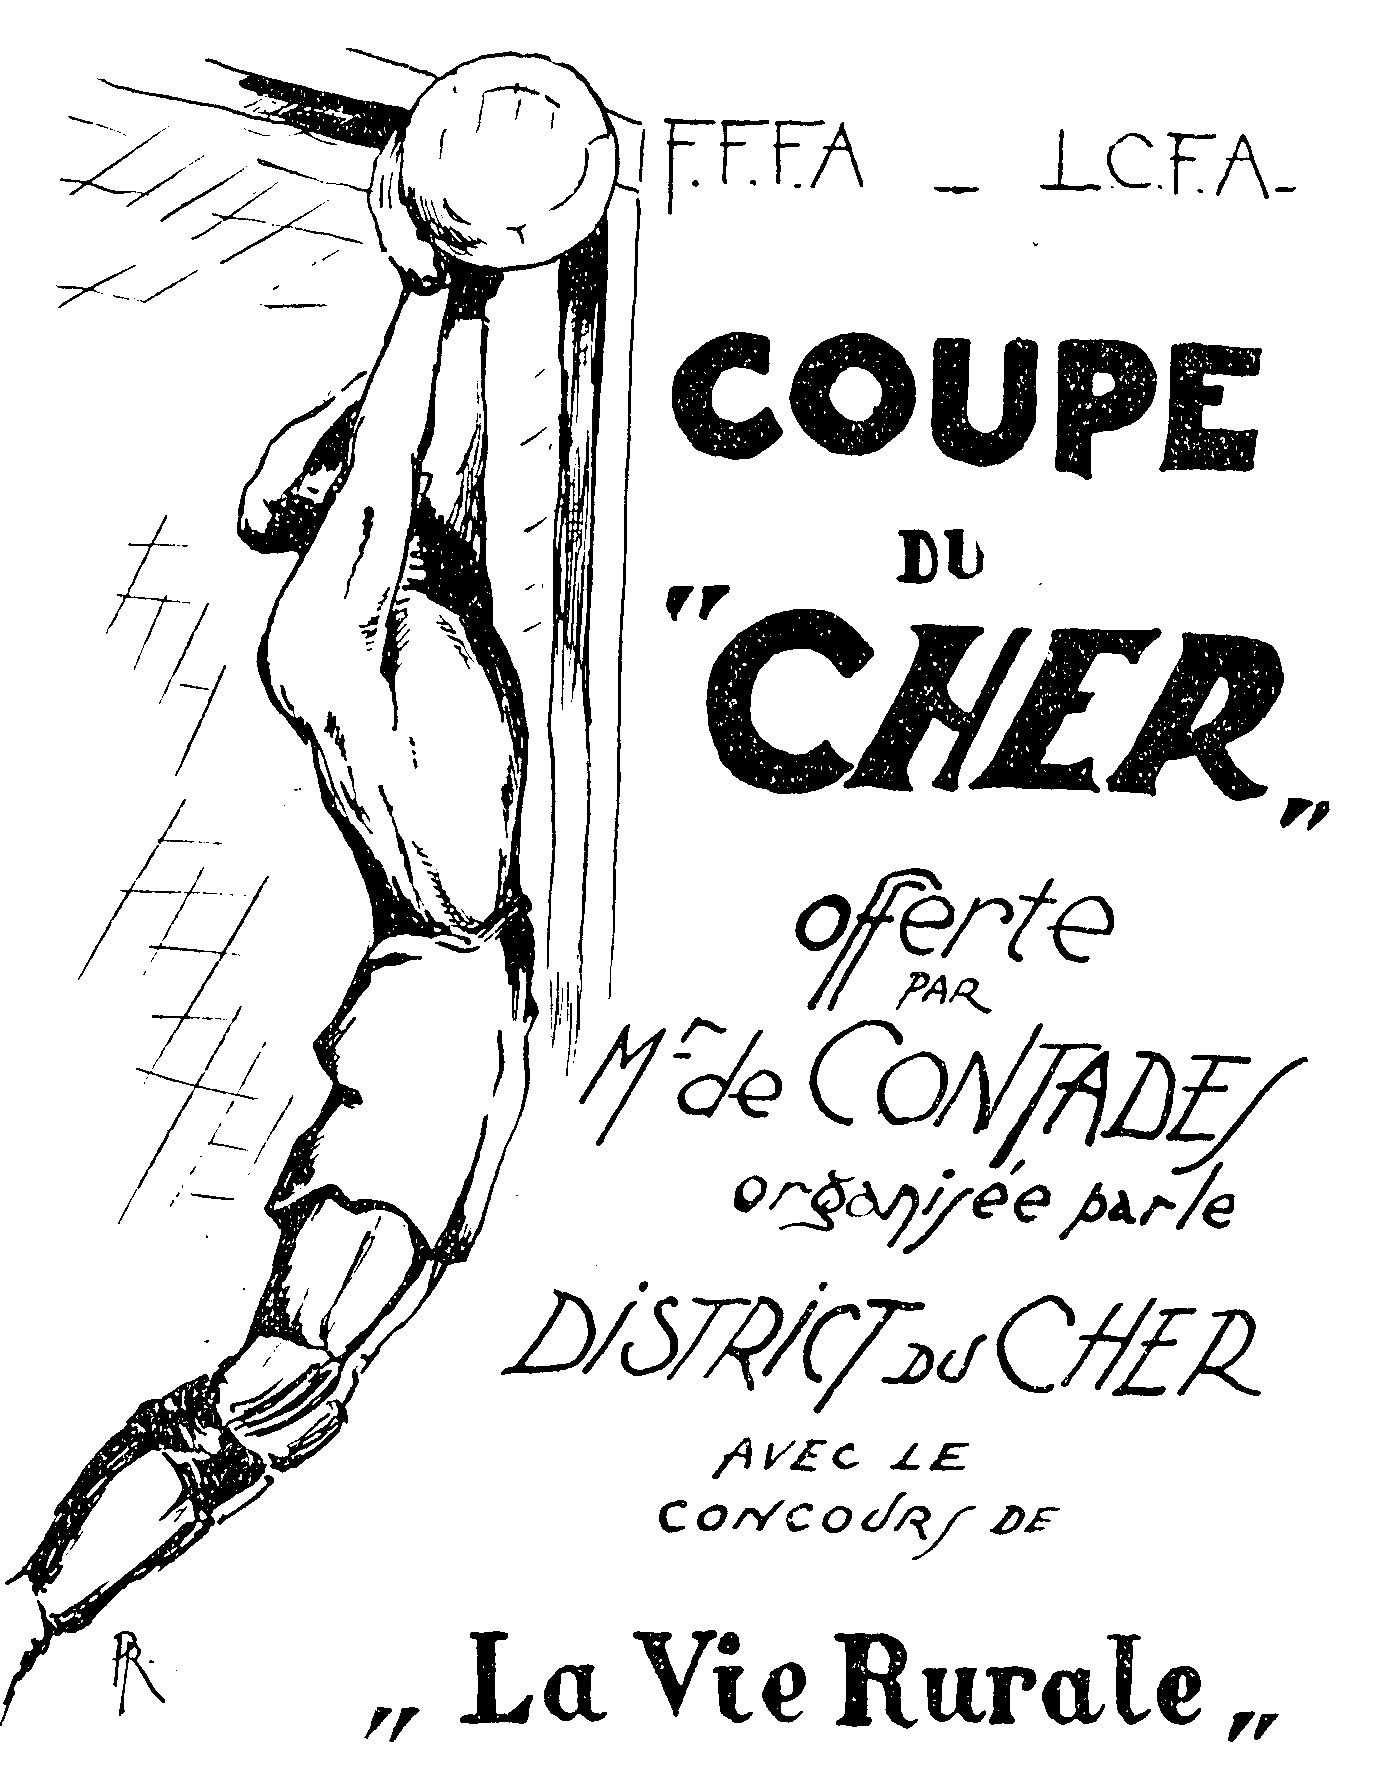 Coupe du Cher offerte par André De Contades